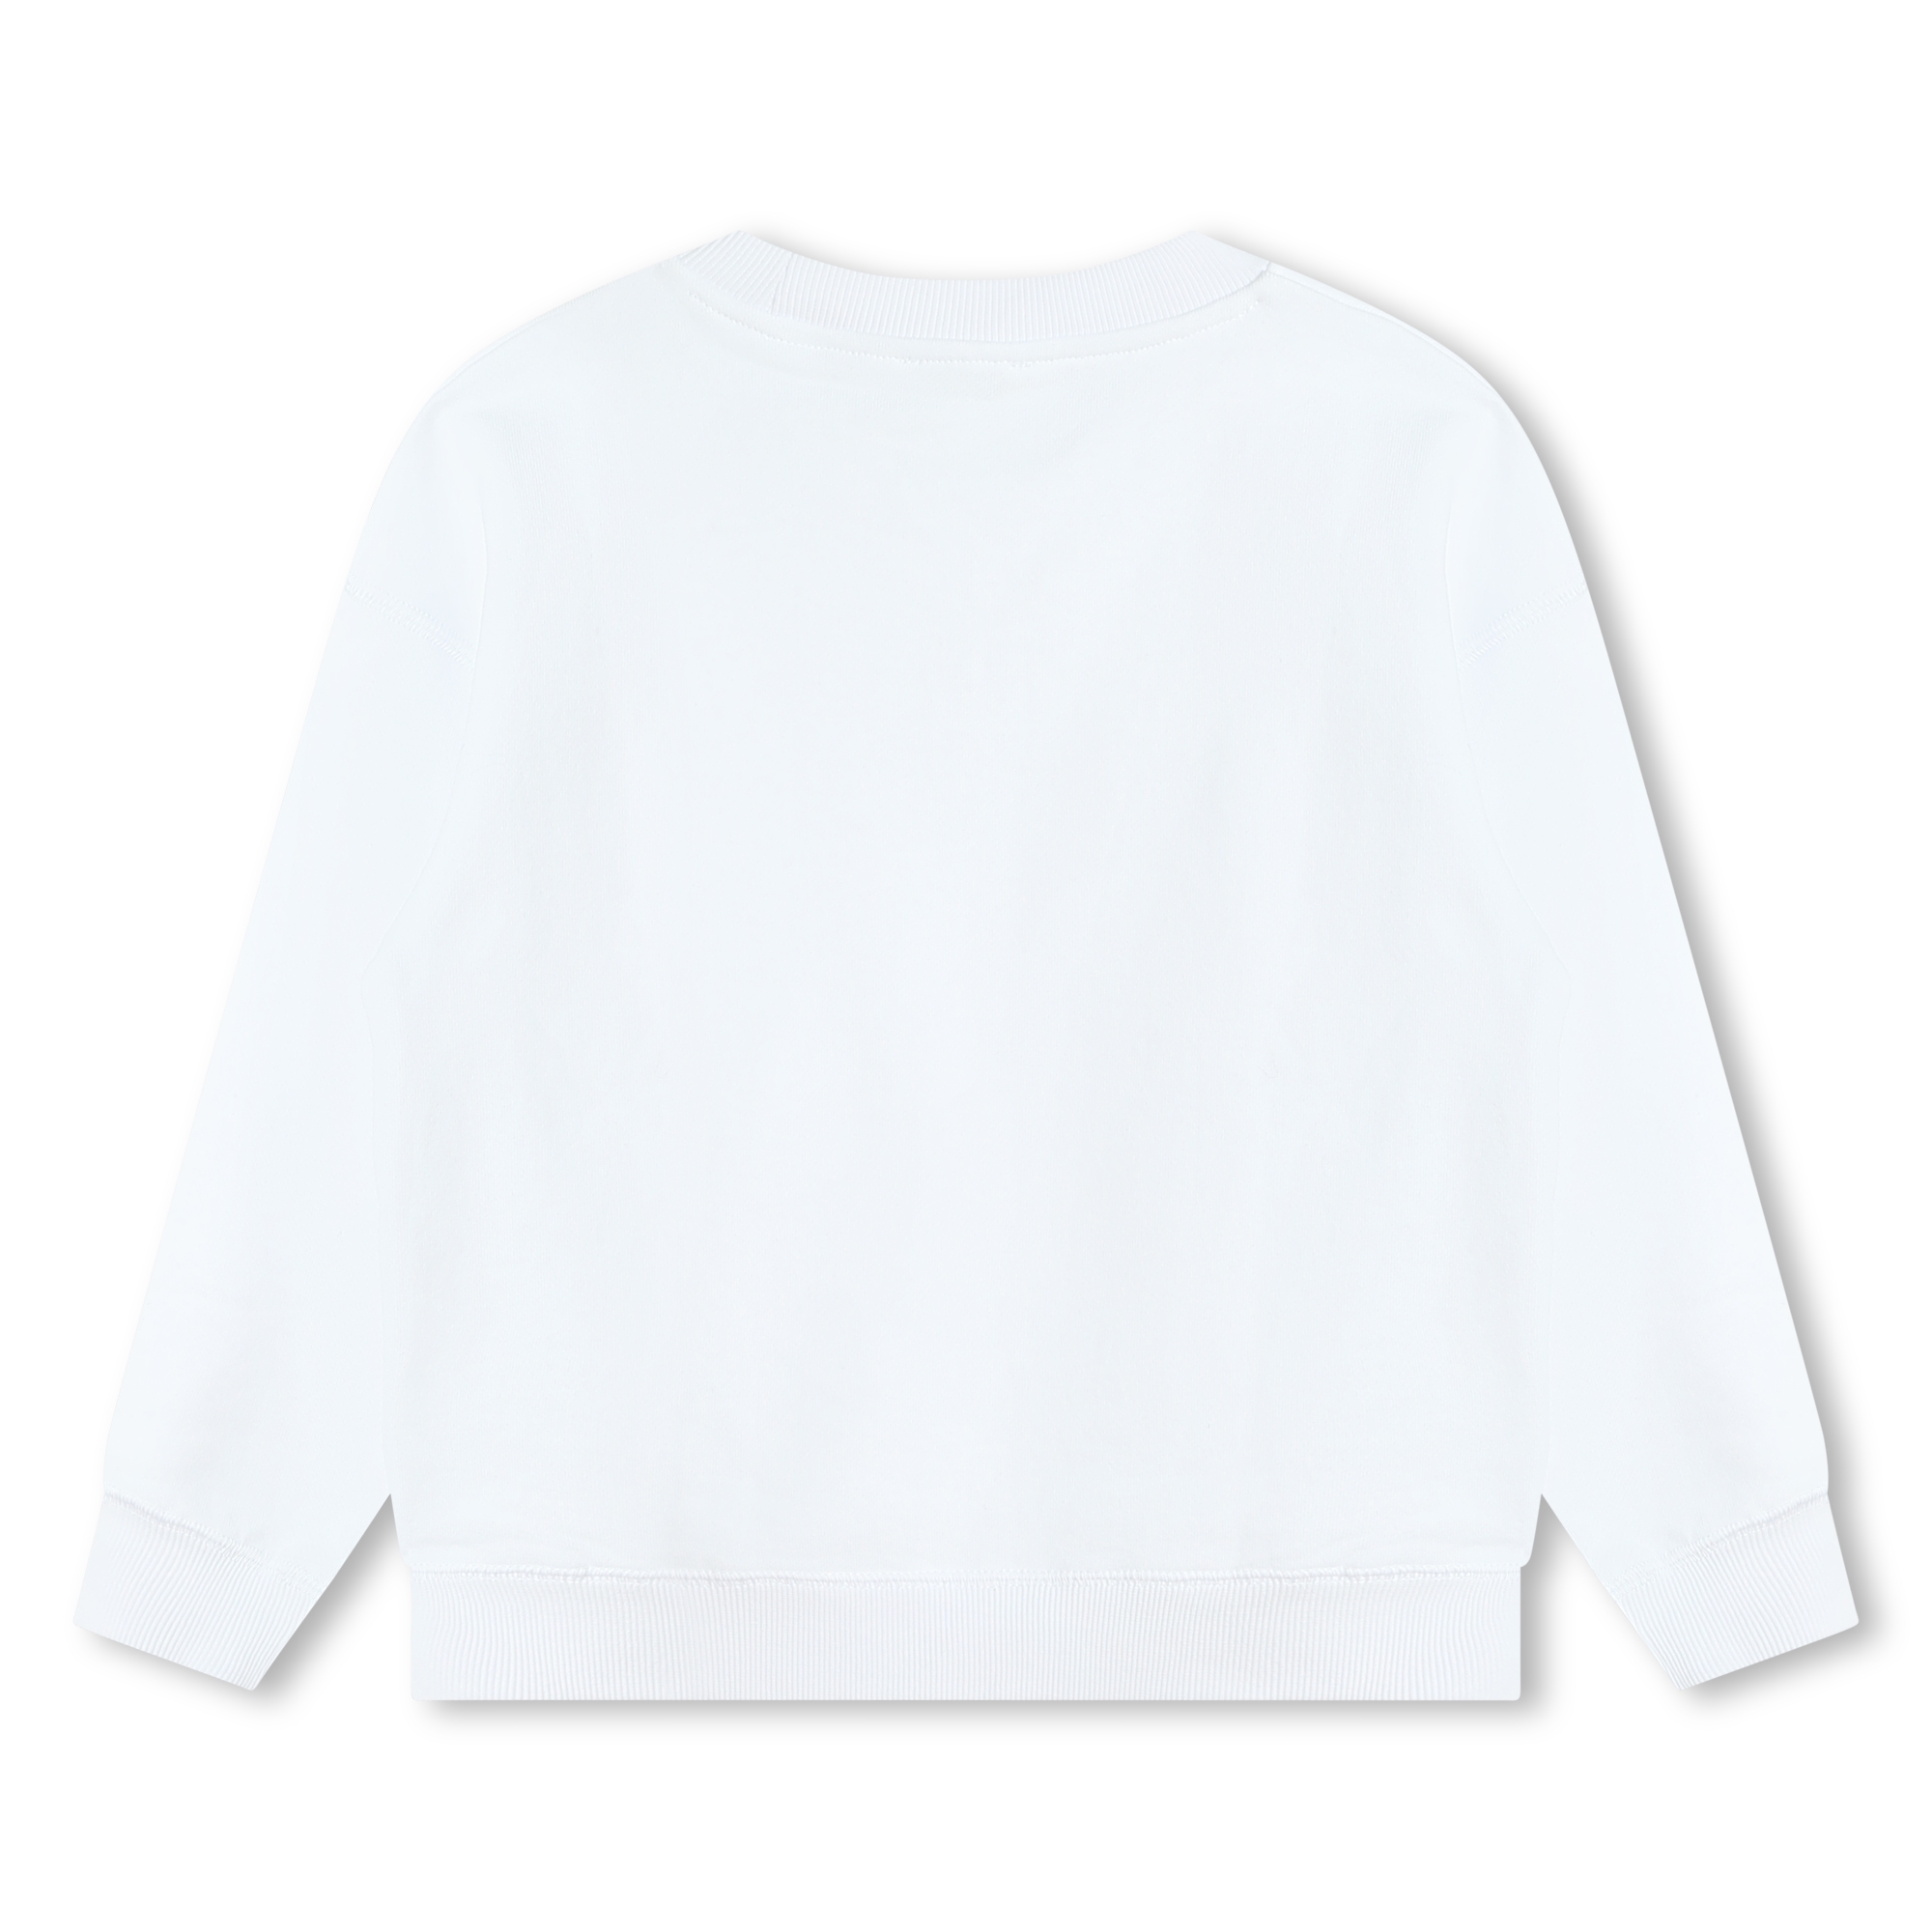 Sweat-shirt molletonné coton MARC JACOBS pour UNISEXE